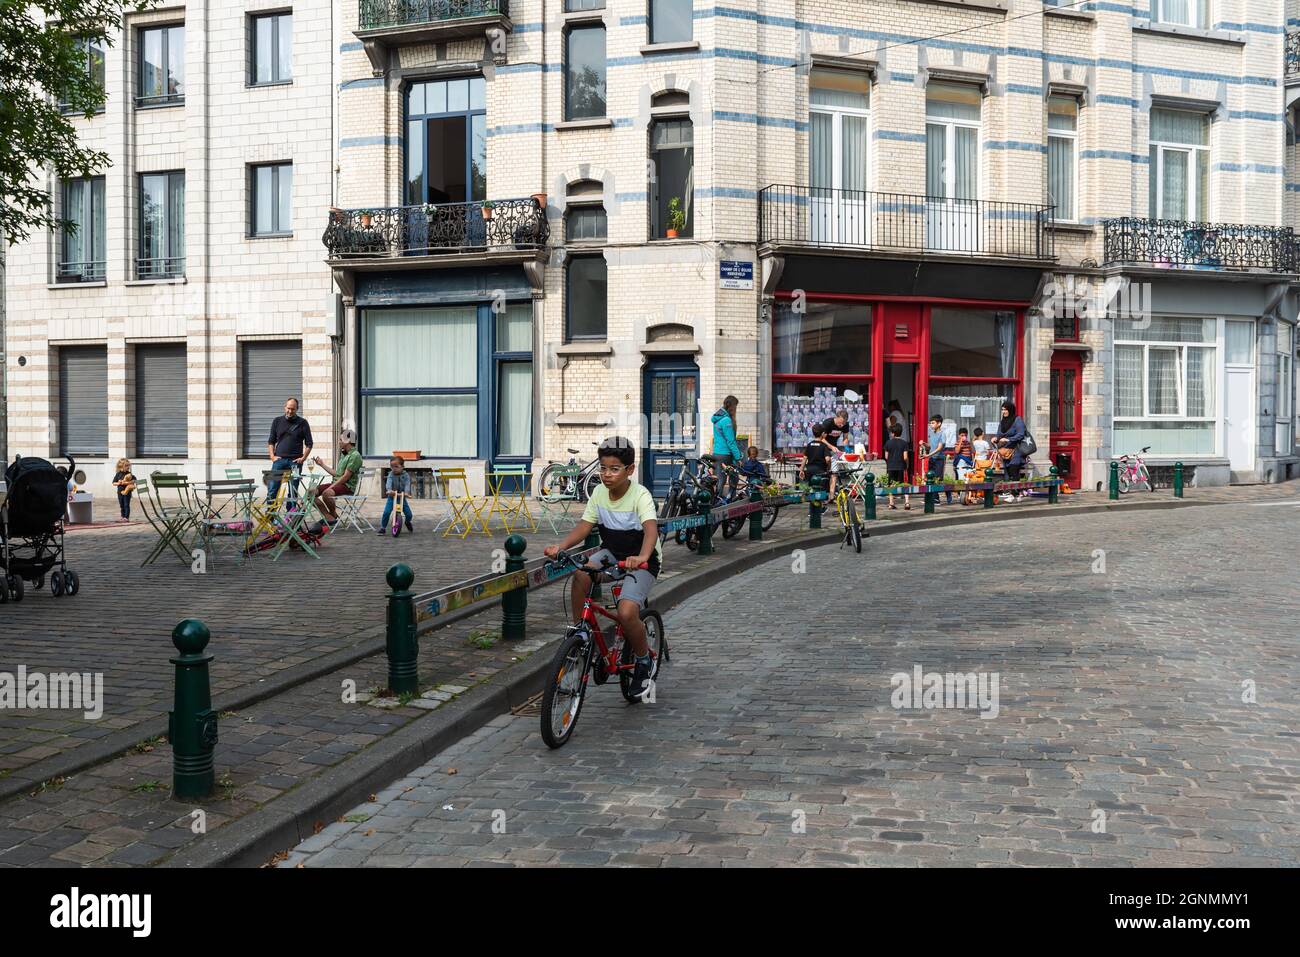 Junge fahren ein Fahrrad auf einer asphaltierten Straße am Auto kostenlos sonntag Stockfoto